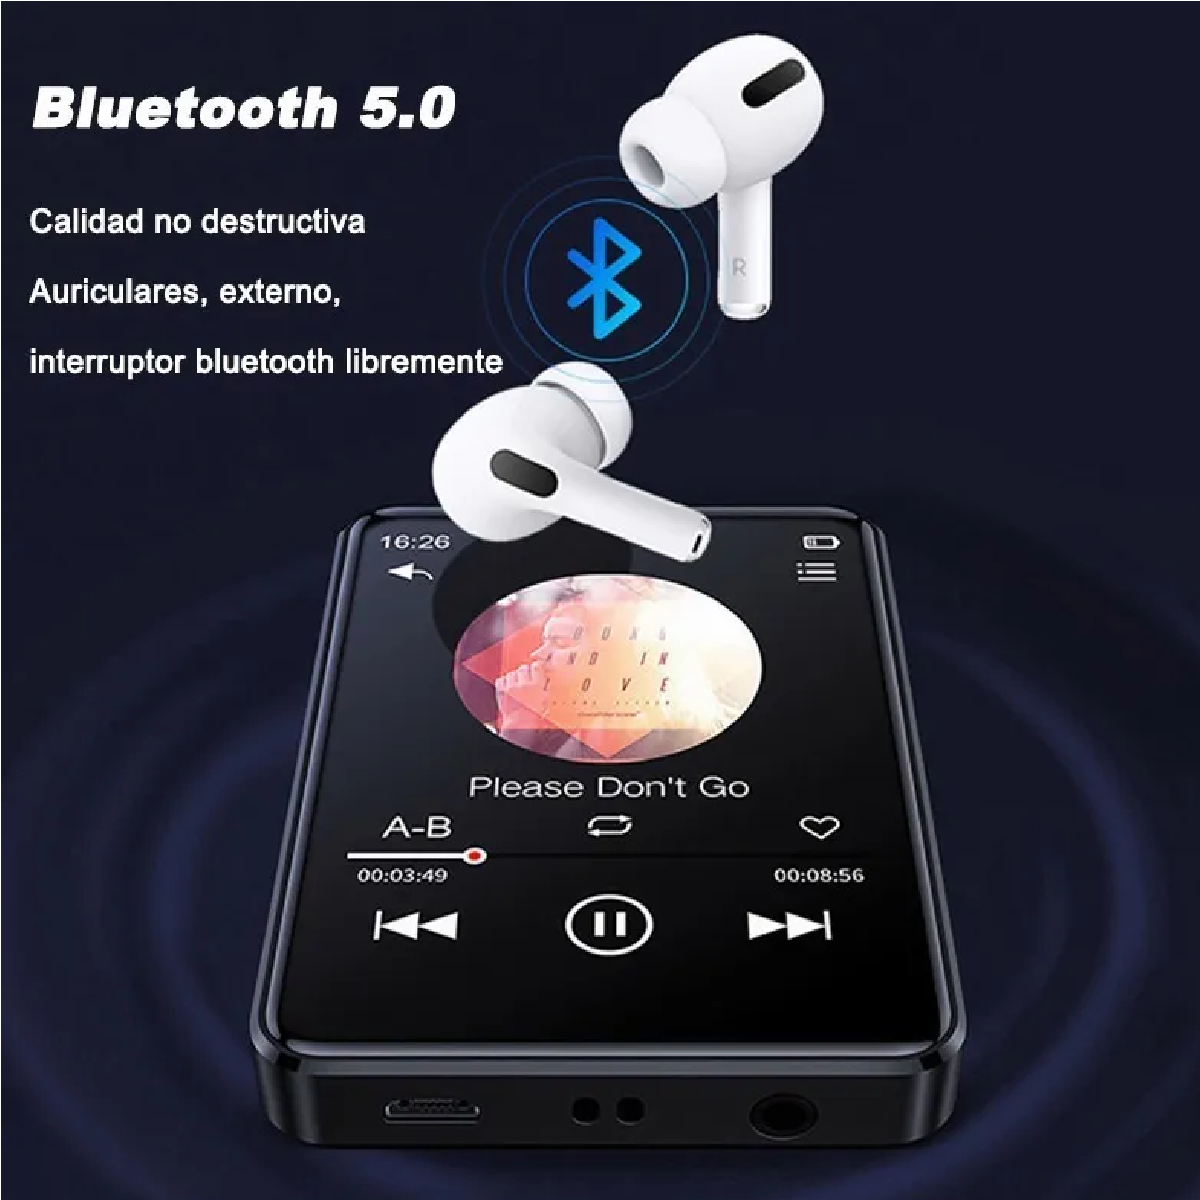 Radio FM portátil con receptor de tarjeta Micro SD / TF / USB de 8 GB  reproductor de música MP3, interfaz de audio LINE IN incorporado, altavoz y